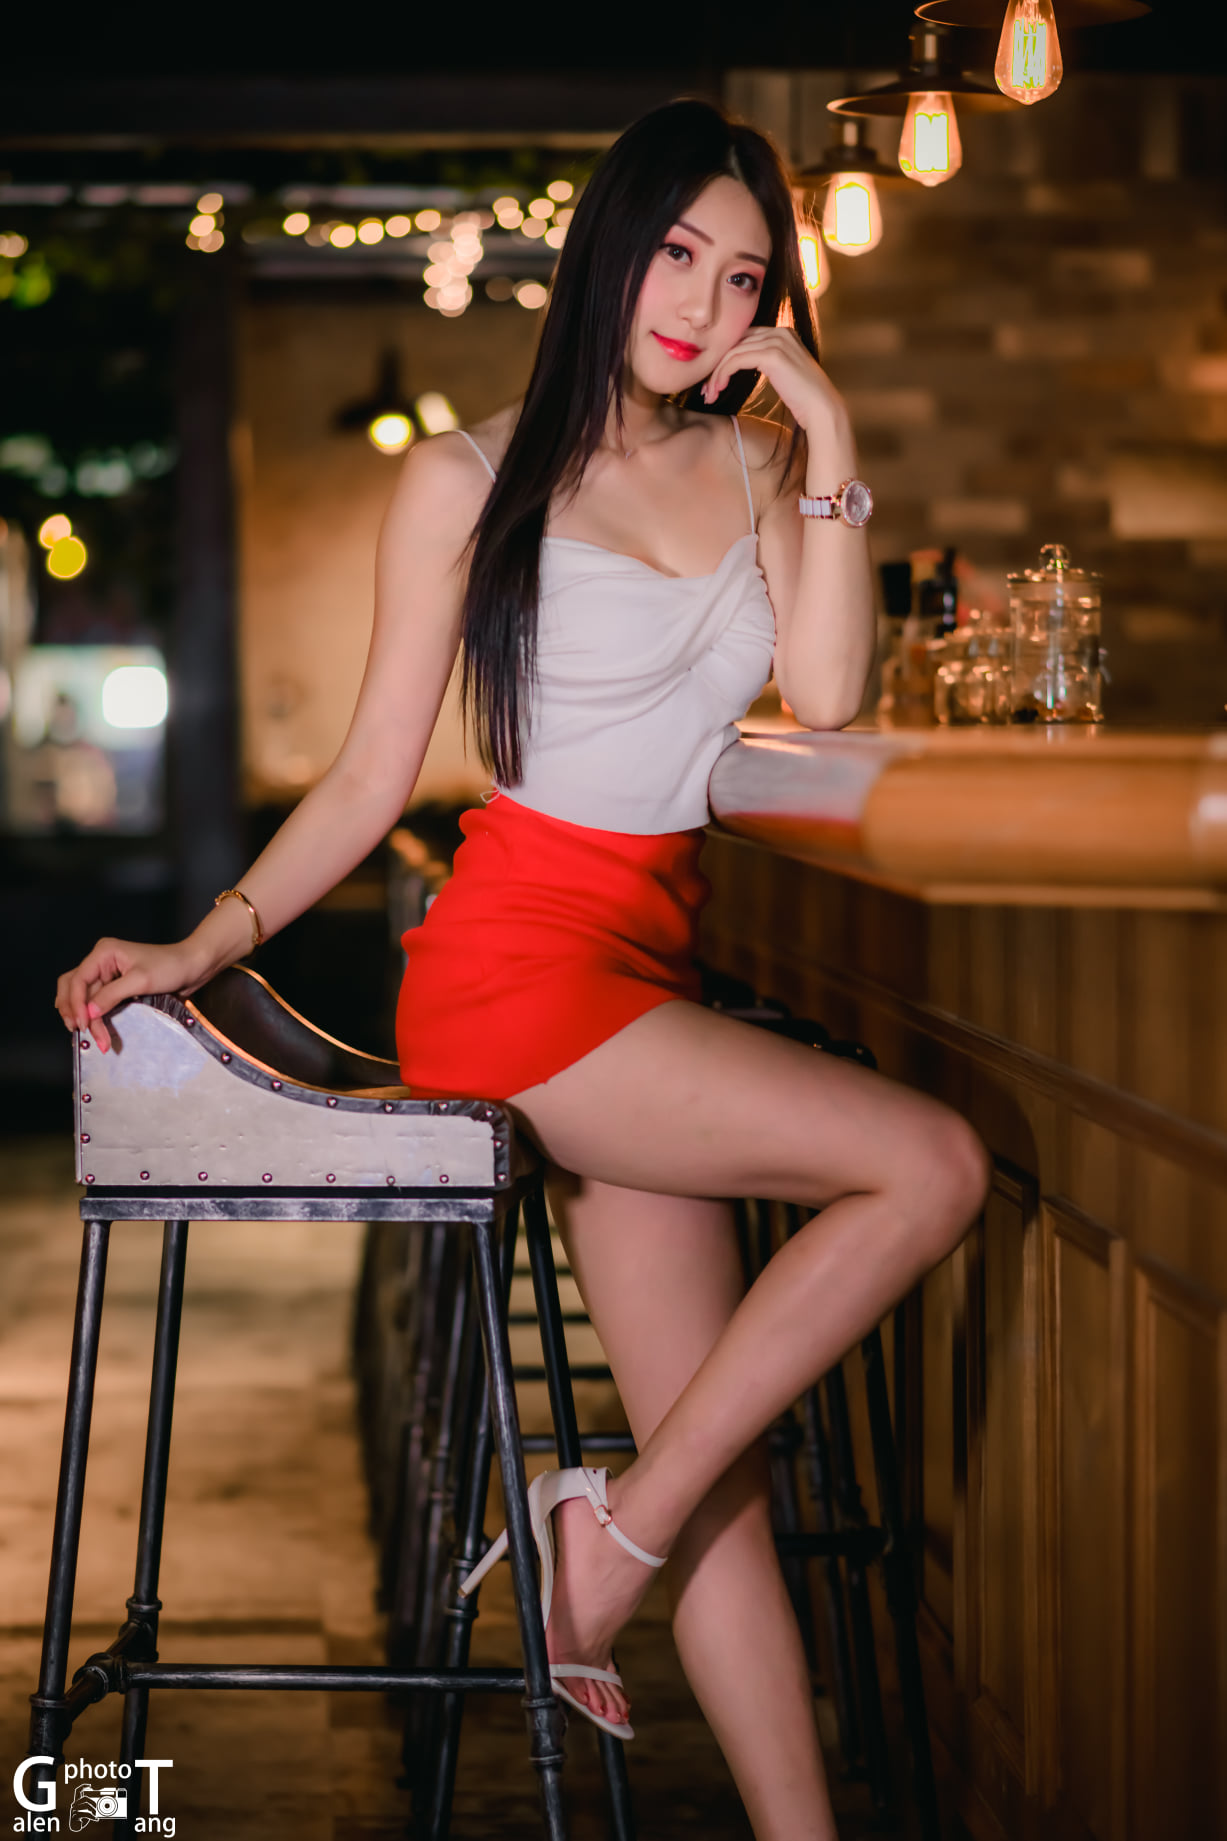 【網路收集】台灣美腿女郎-吳采婕 長腿美女外拍寫真 - 貼圖 - 絲襪美腿 -